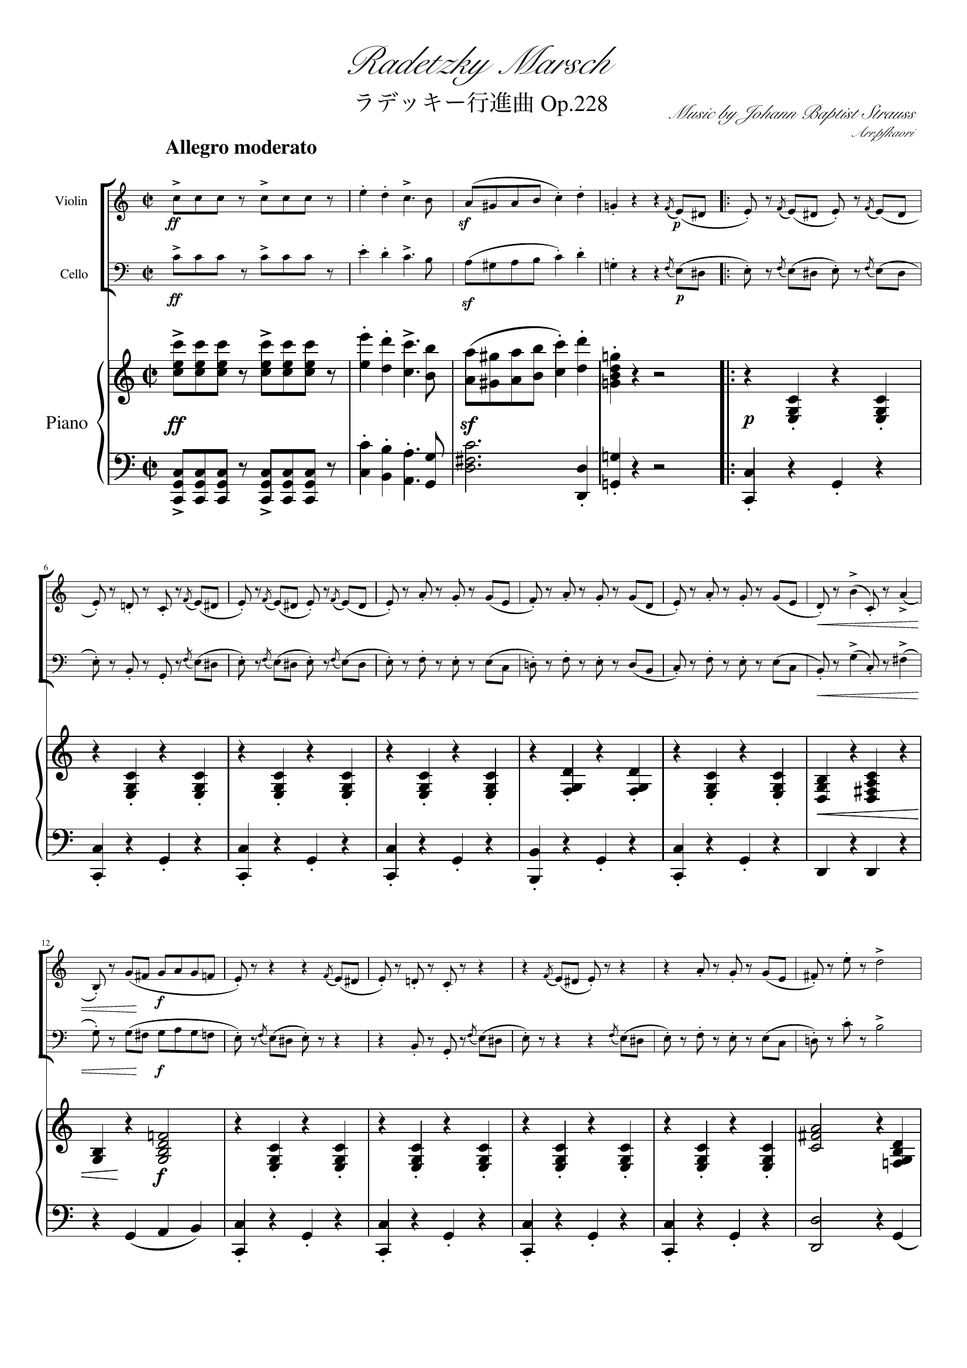 ヨハンシュトラウス1世 - ラデッキー行進曲 (C・ピアノトリオ/ヴァイオリン&チェロ) by pfkaori